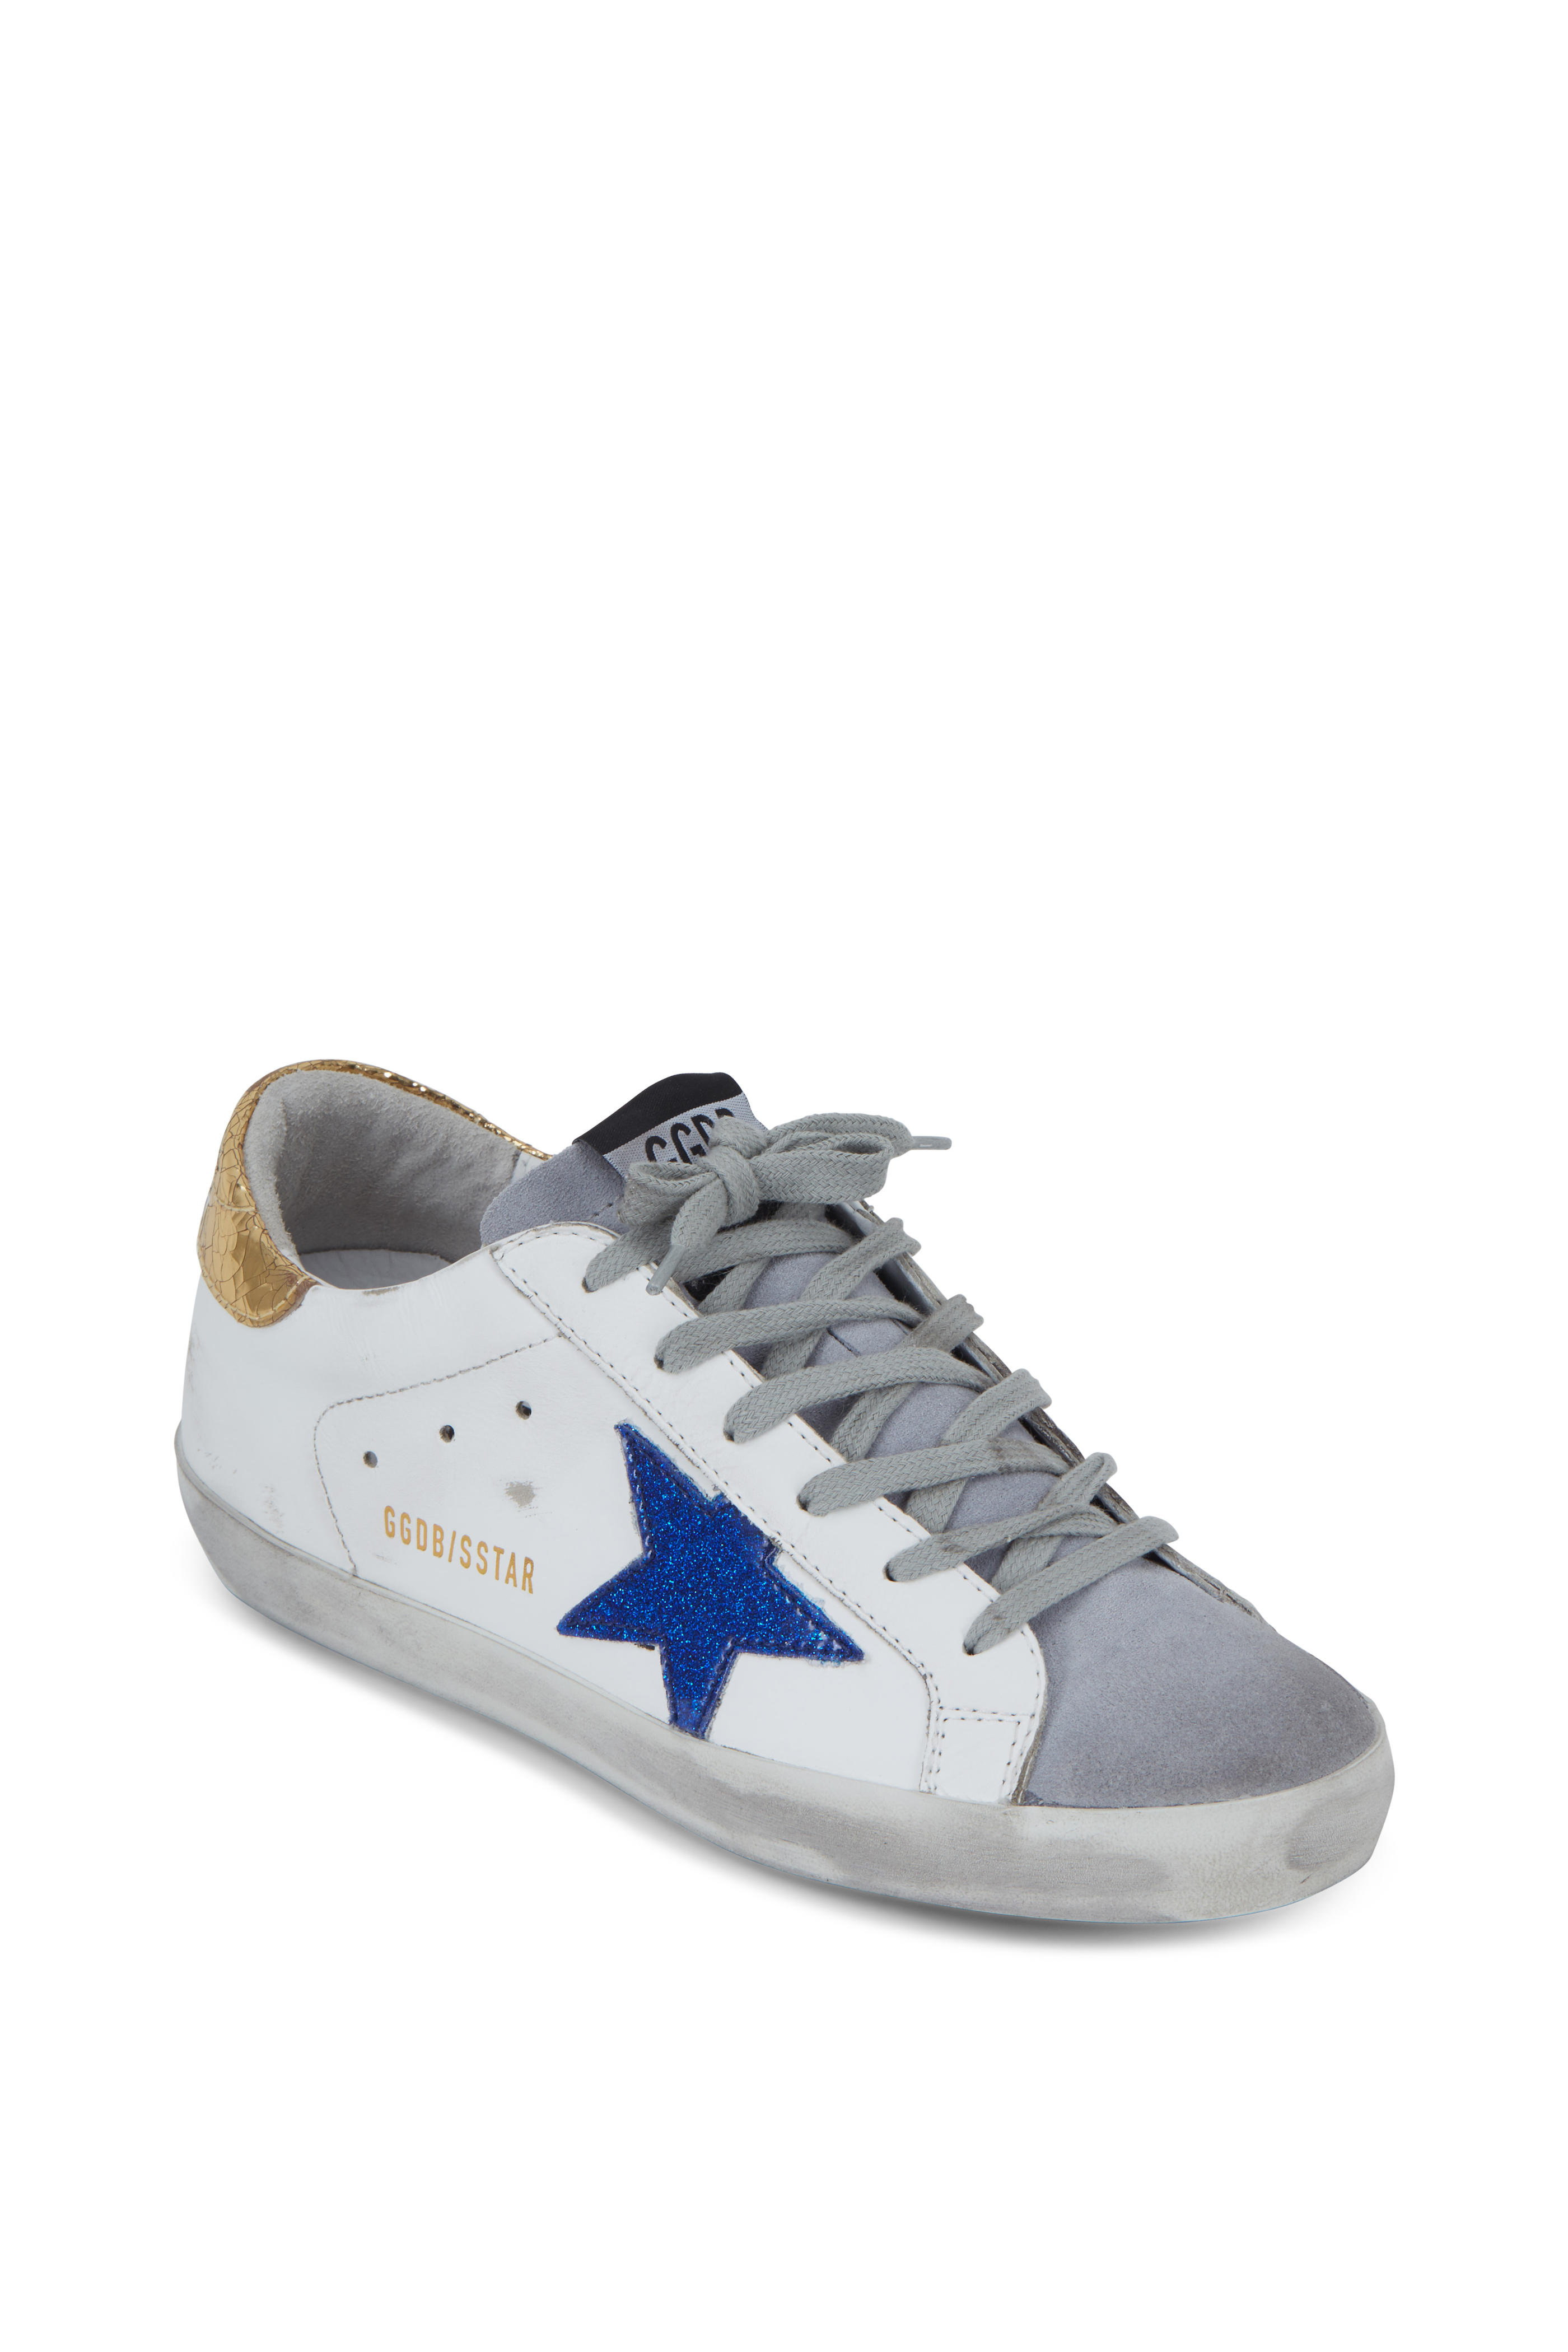 golden goose sneakers blue star